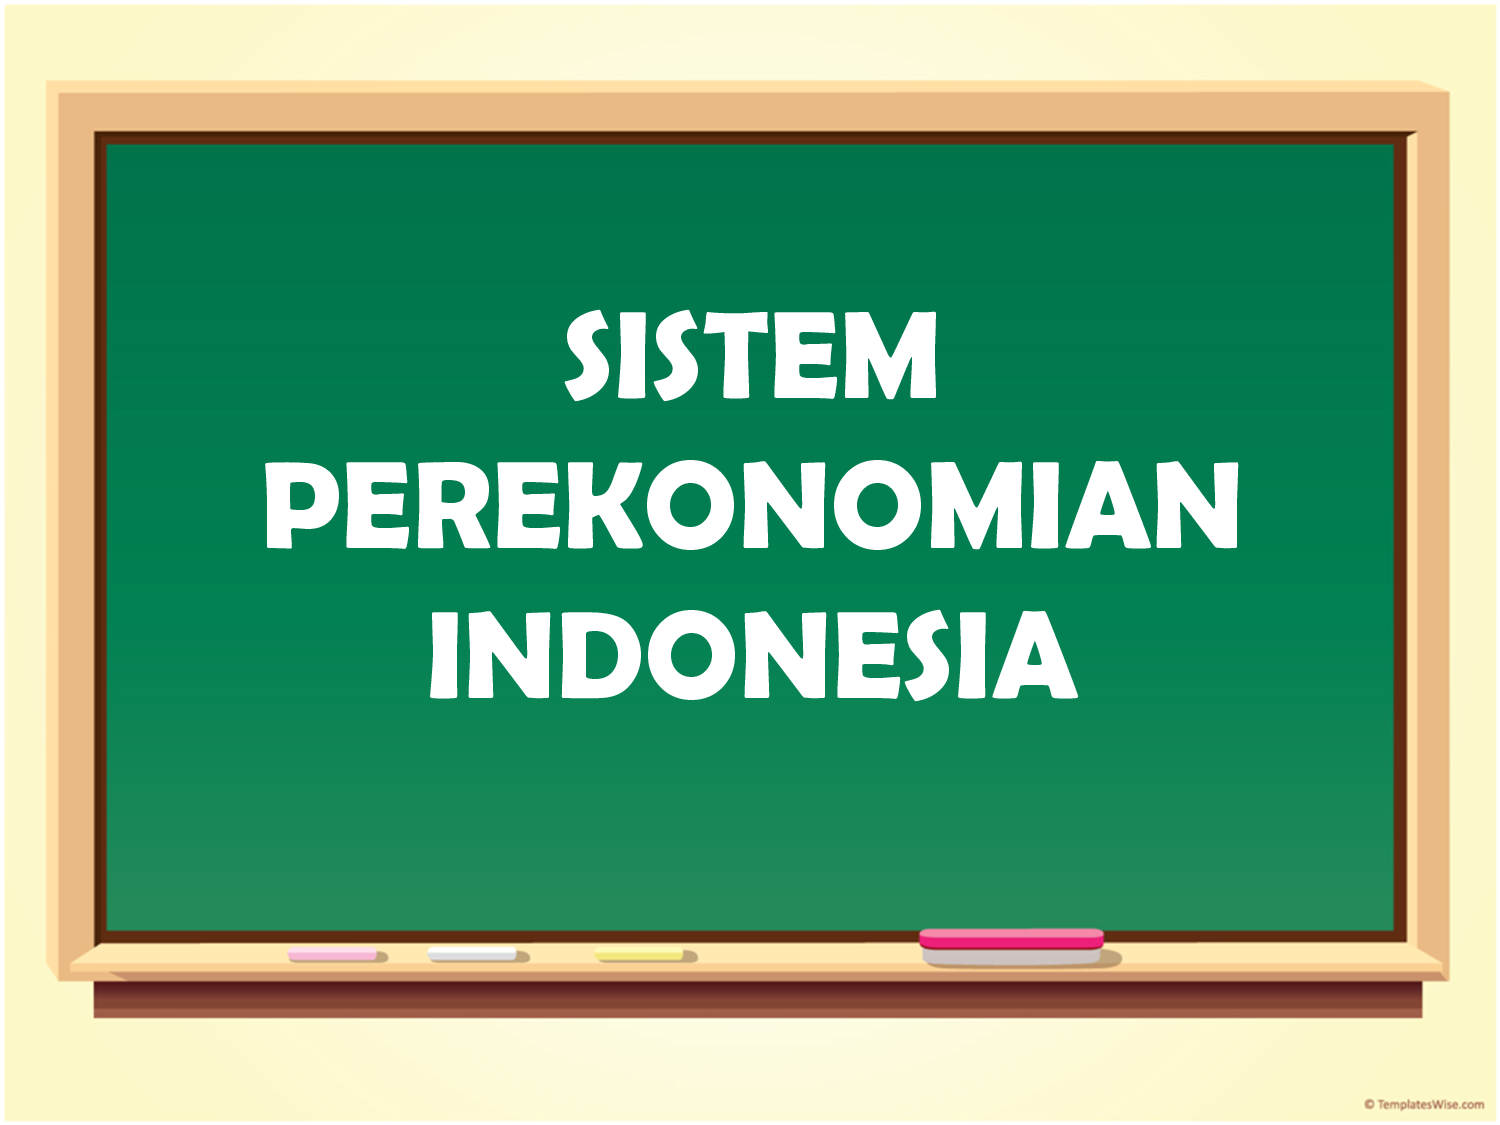  Sistem Perekonomian Indonesia  Ekonomi Sajalah